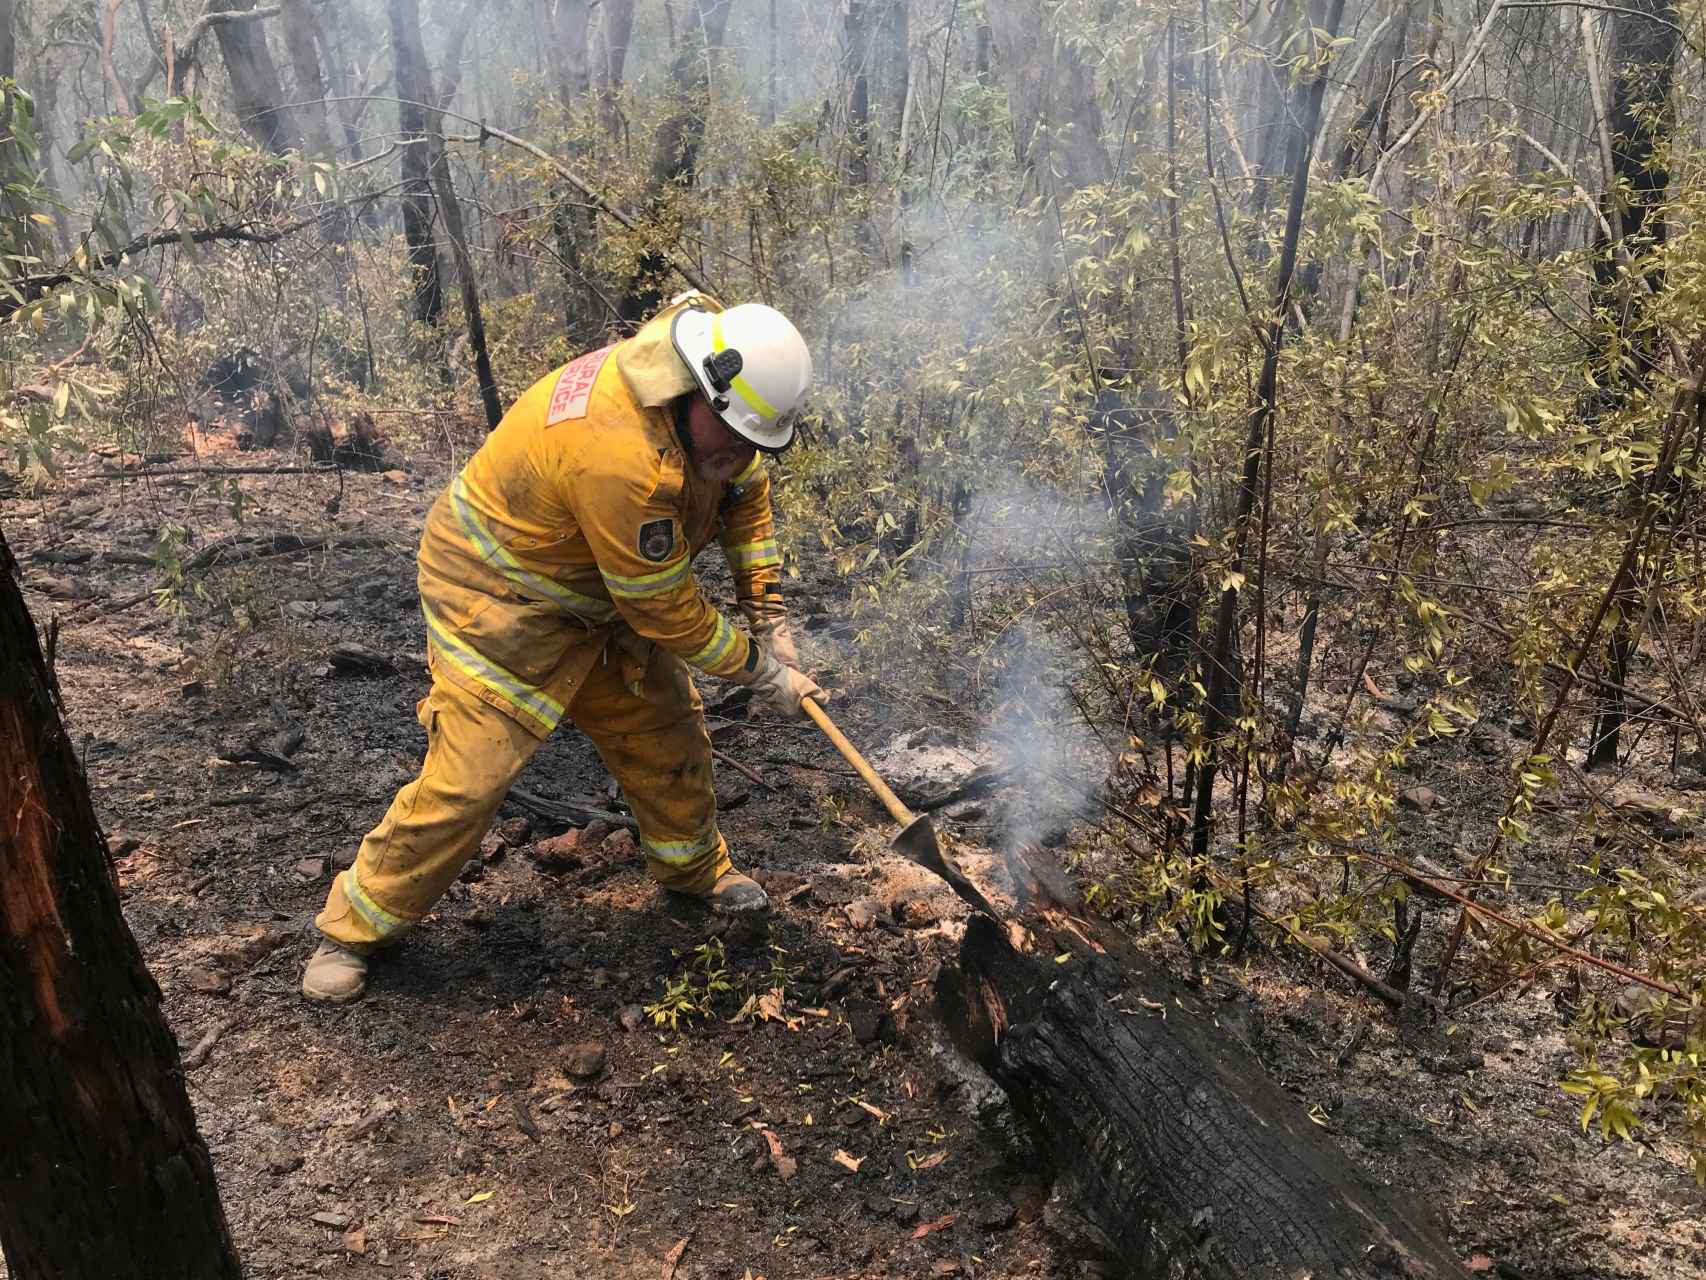 Resultado de imagen para incendios en australia fotos de animales muertos